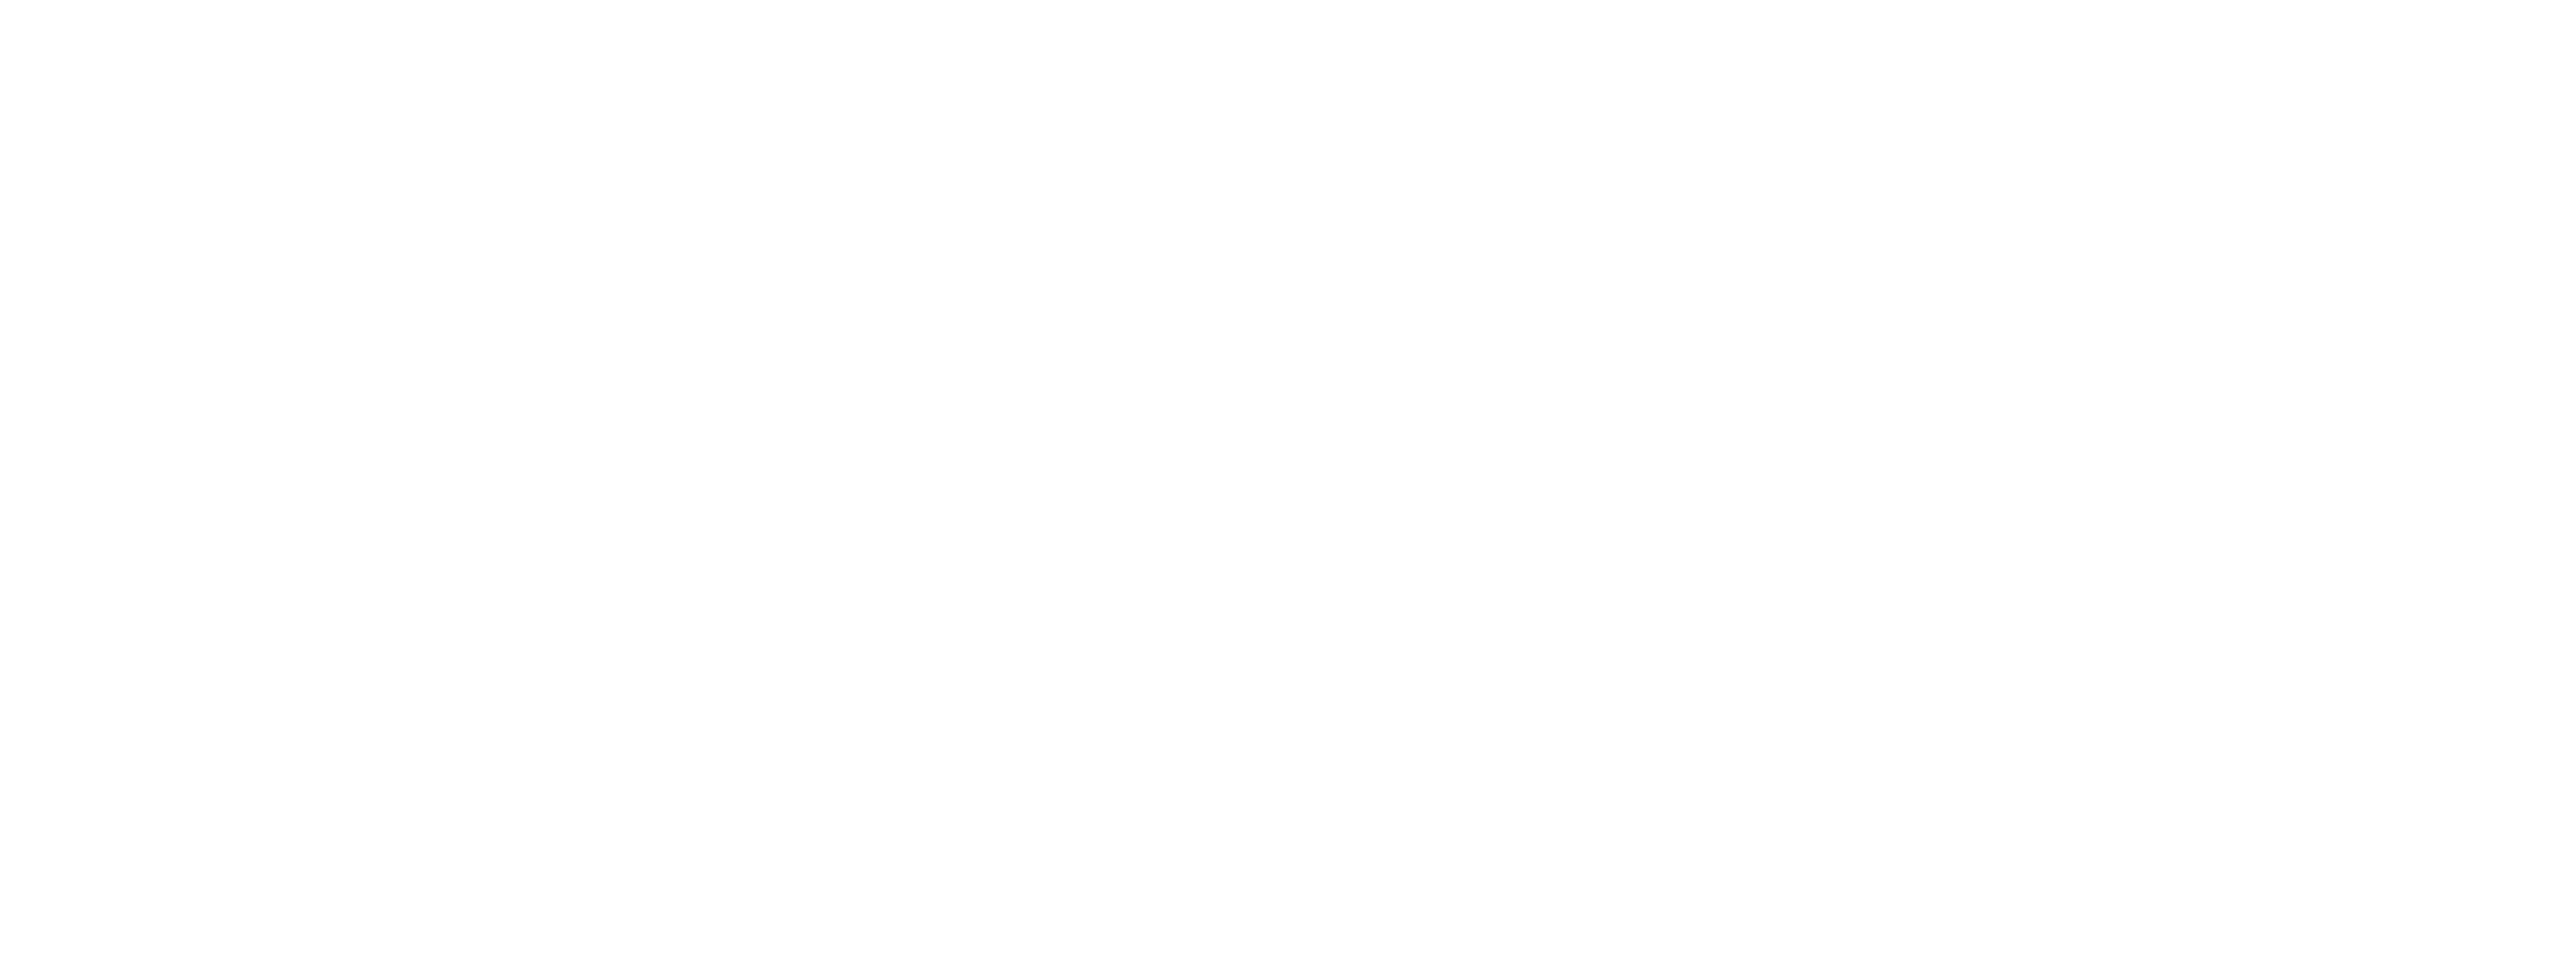 SMC World We Want Logo